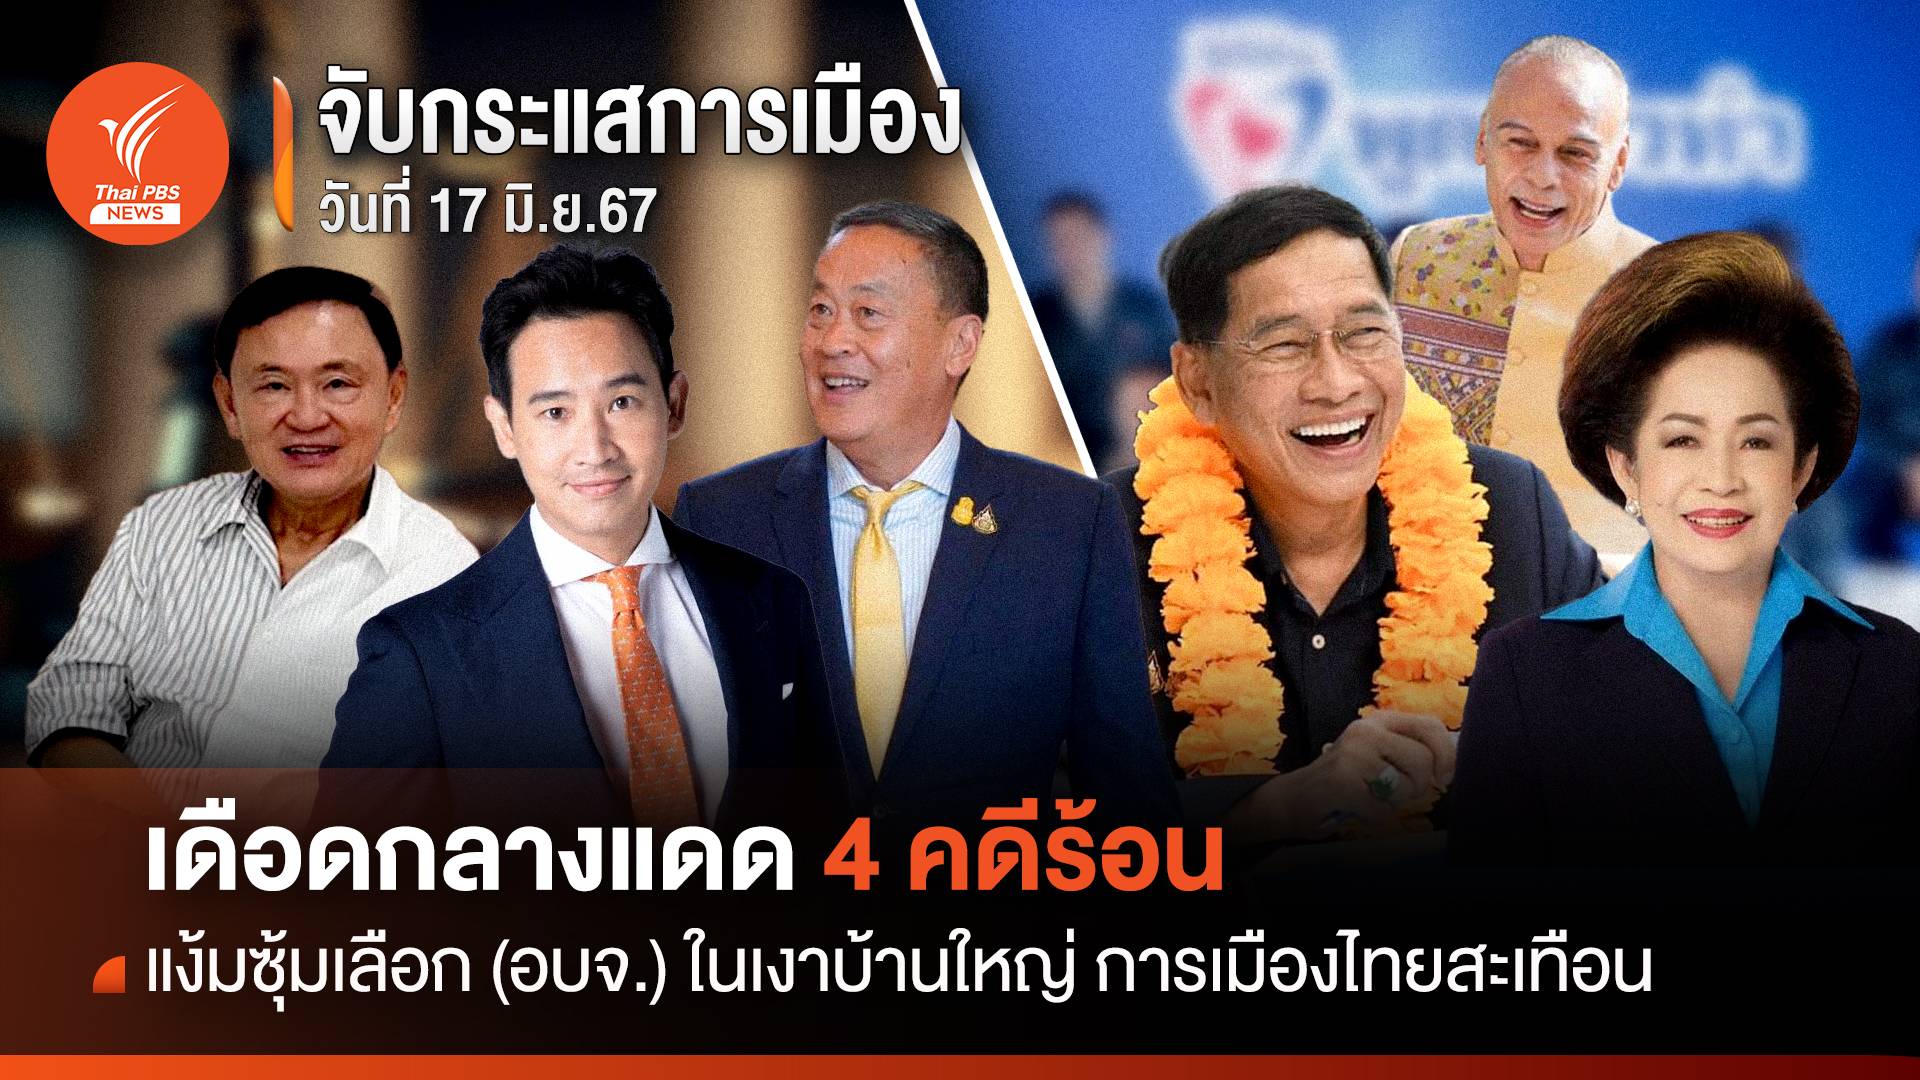 จับกระแสการเมือง:วันที่ 17 มิ.ย. 67 เดือดกลางแดด 4 คดีร้อน แง้มซุ้มเลือก(อบจ.)ในเงาบ้านใหญ่ การเมืองไทยสะเทือน